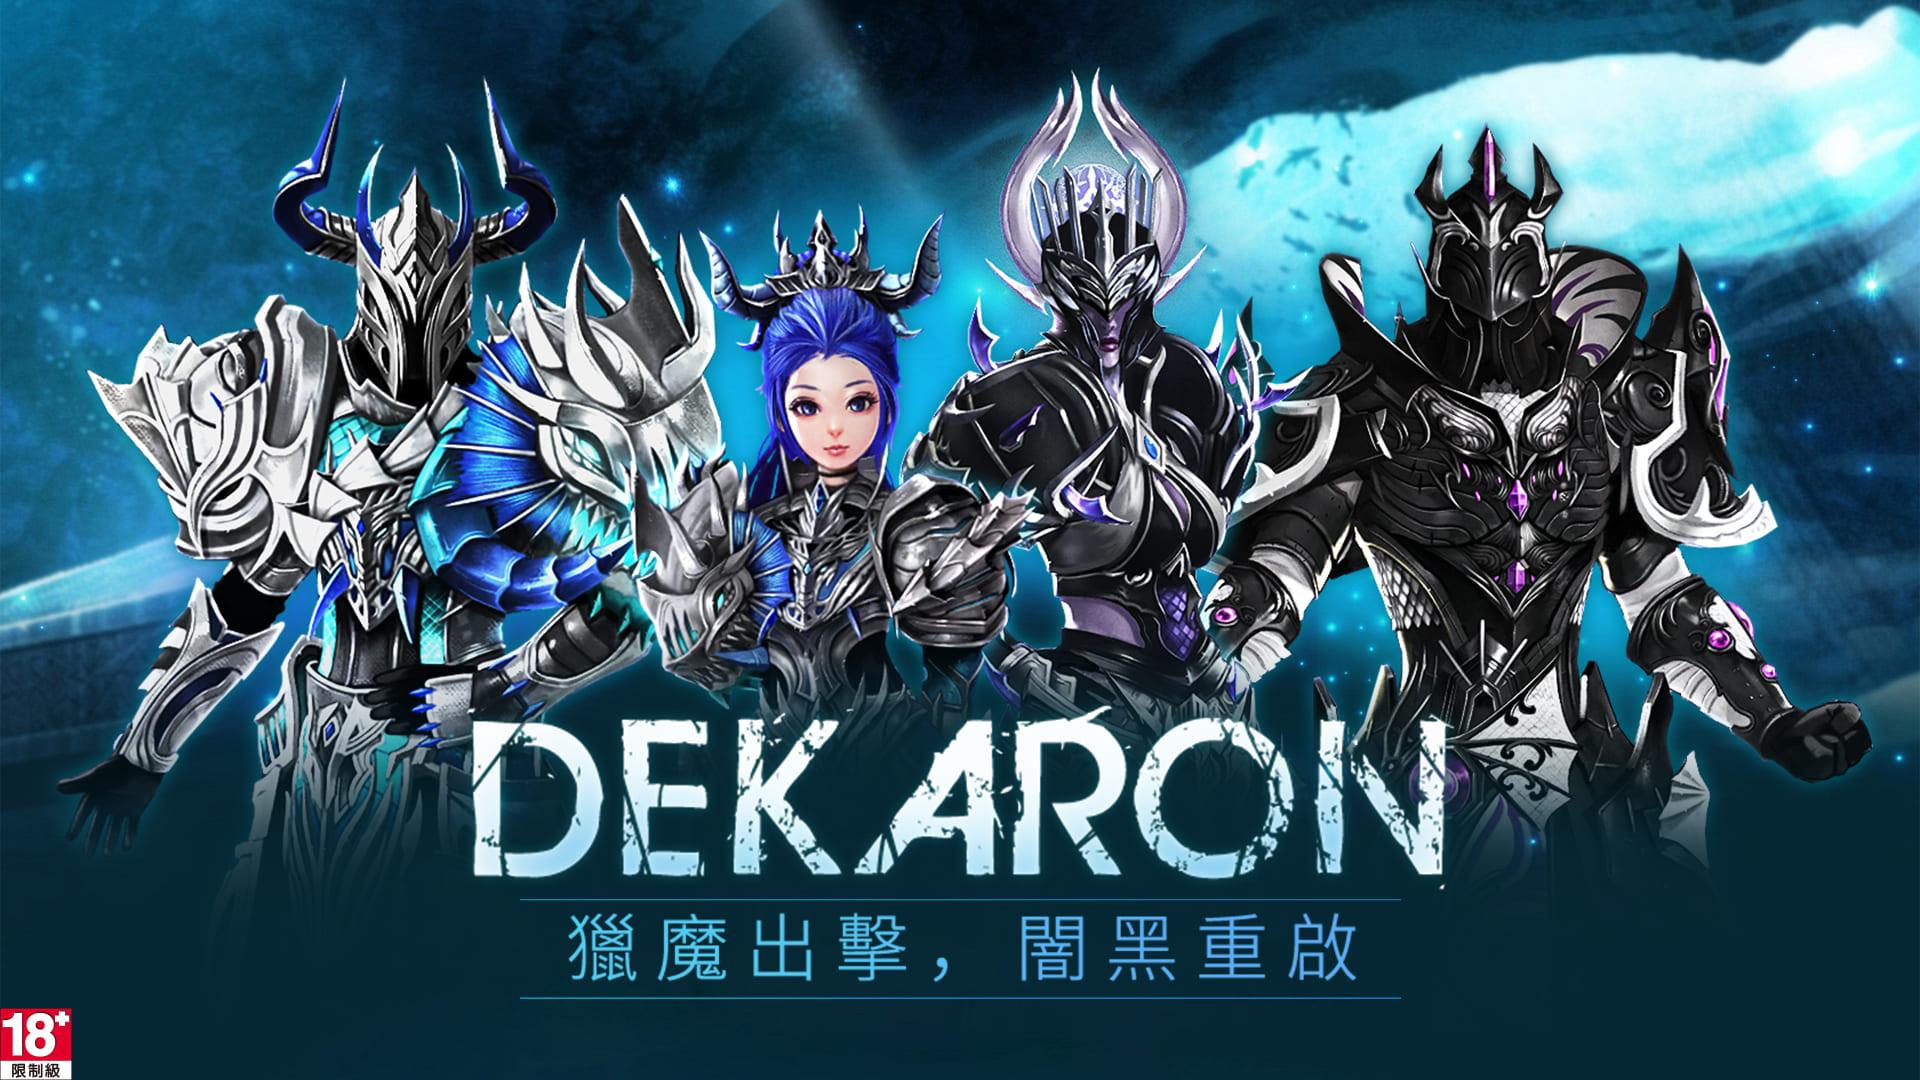 《Dekaron獵魔出擊》1月16日正式開服 全新推出新職業「獵魔師」及深海地圖與史詩裝備